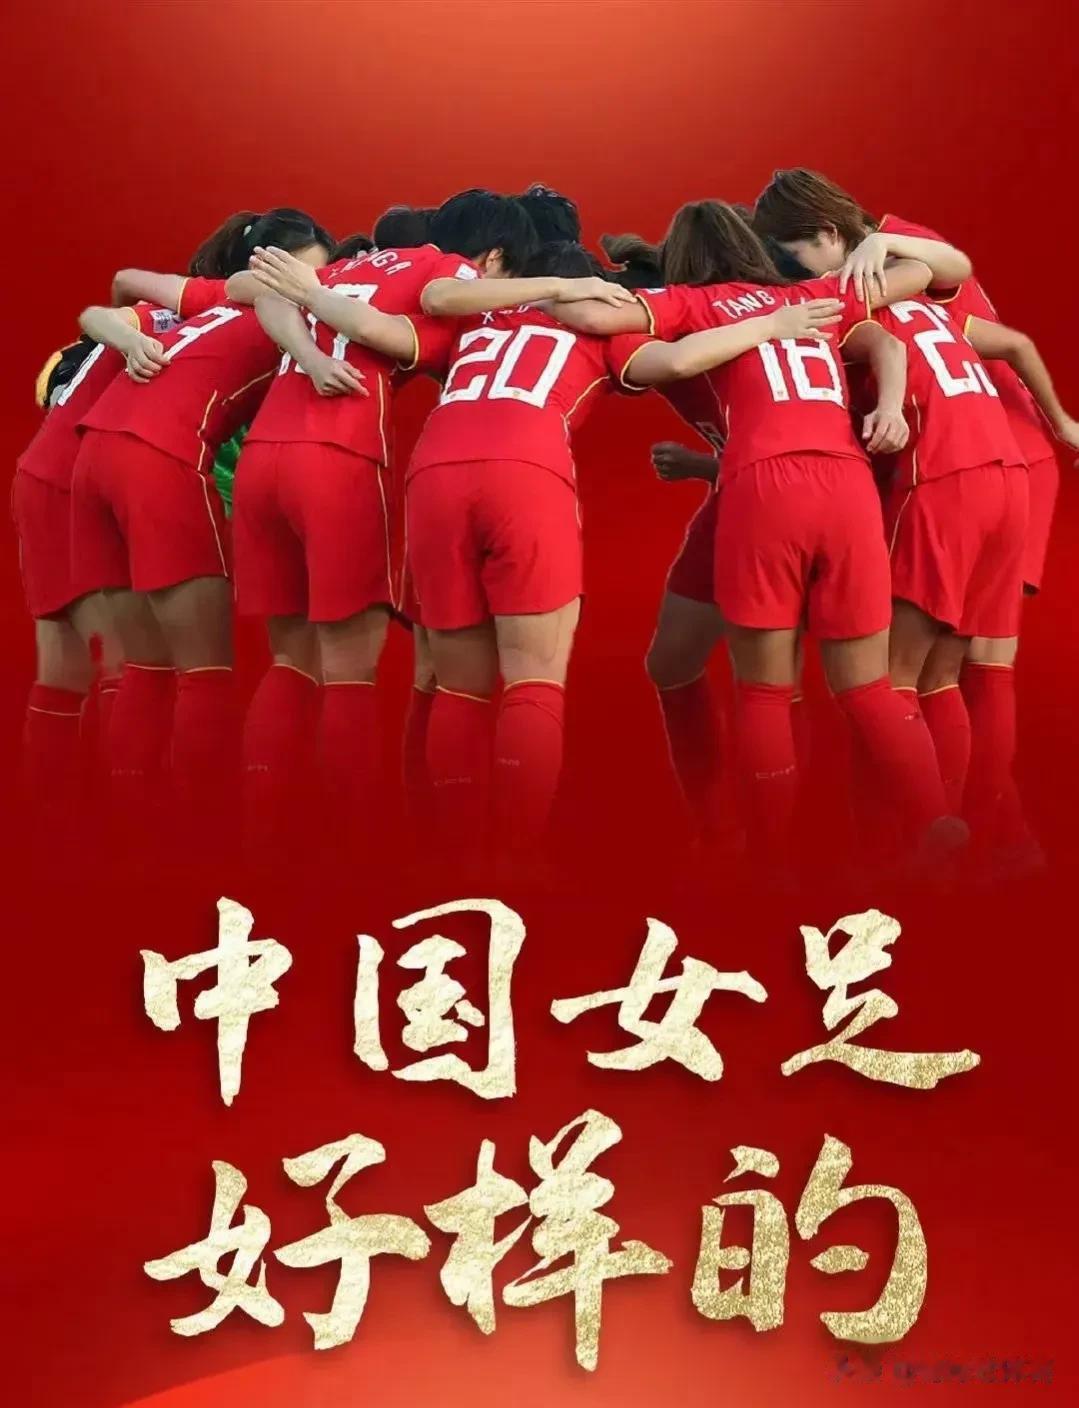 女足出发征战2023女足世界杯，
铿锵将玫瑰再次绽放。
这赛事不知中国男足怎么看